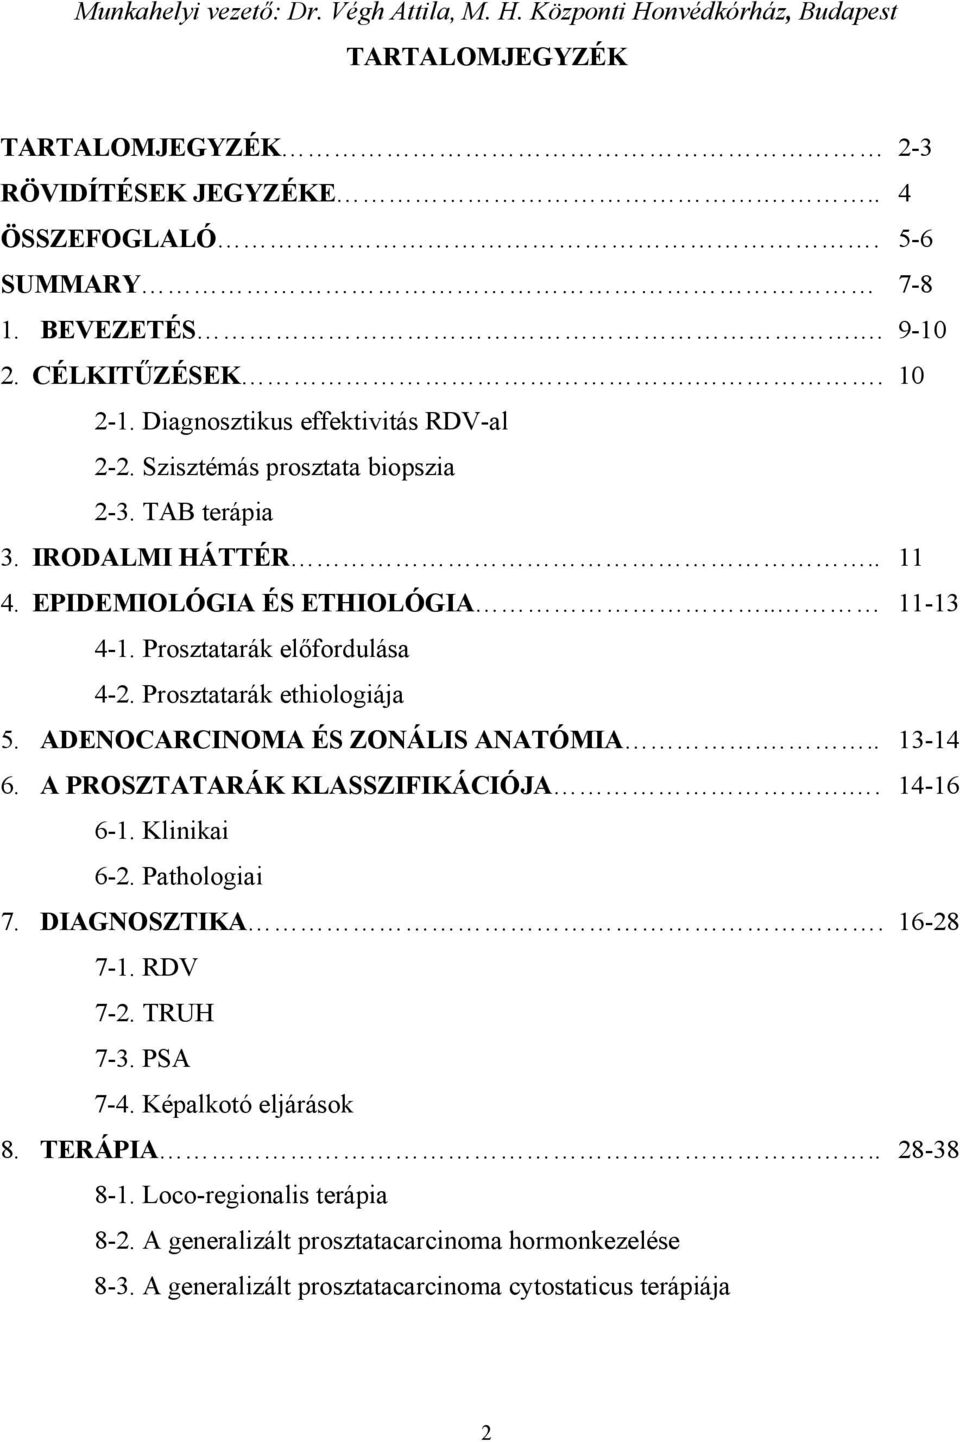 Prosztatarák előfordulása 4-2. Prosztatarák ethiologiája 5. ADENOCARCINOMA ÉS ZONÁLIS ANATÓMIA... 13-14 6. A PROSZTATARÁK KLASSZIFIKÁCIÓJA.. 14-16 6-1. Klinikai 6-2. Pathologiai 7. DIAGNOSZTIKA.